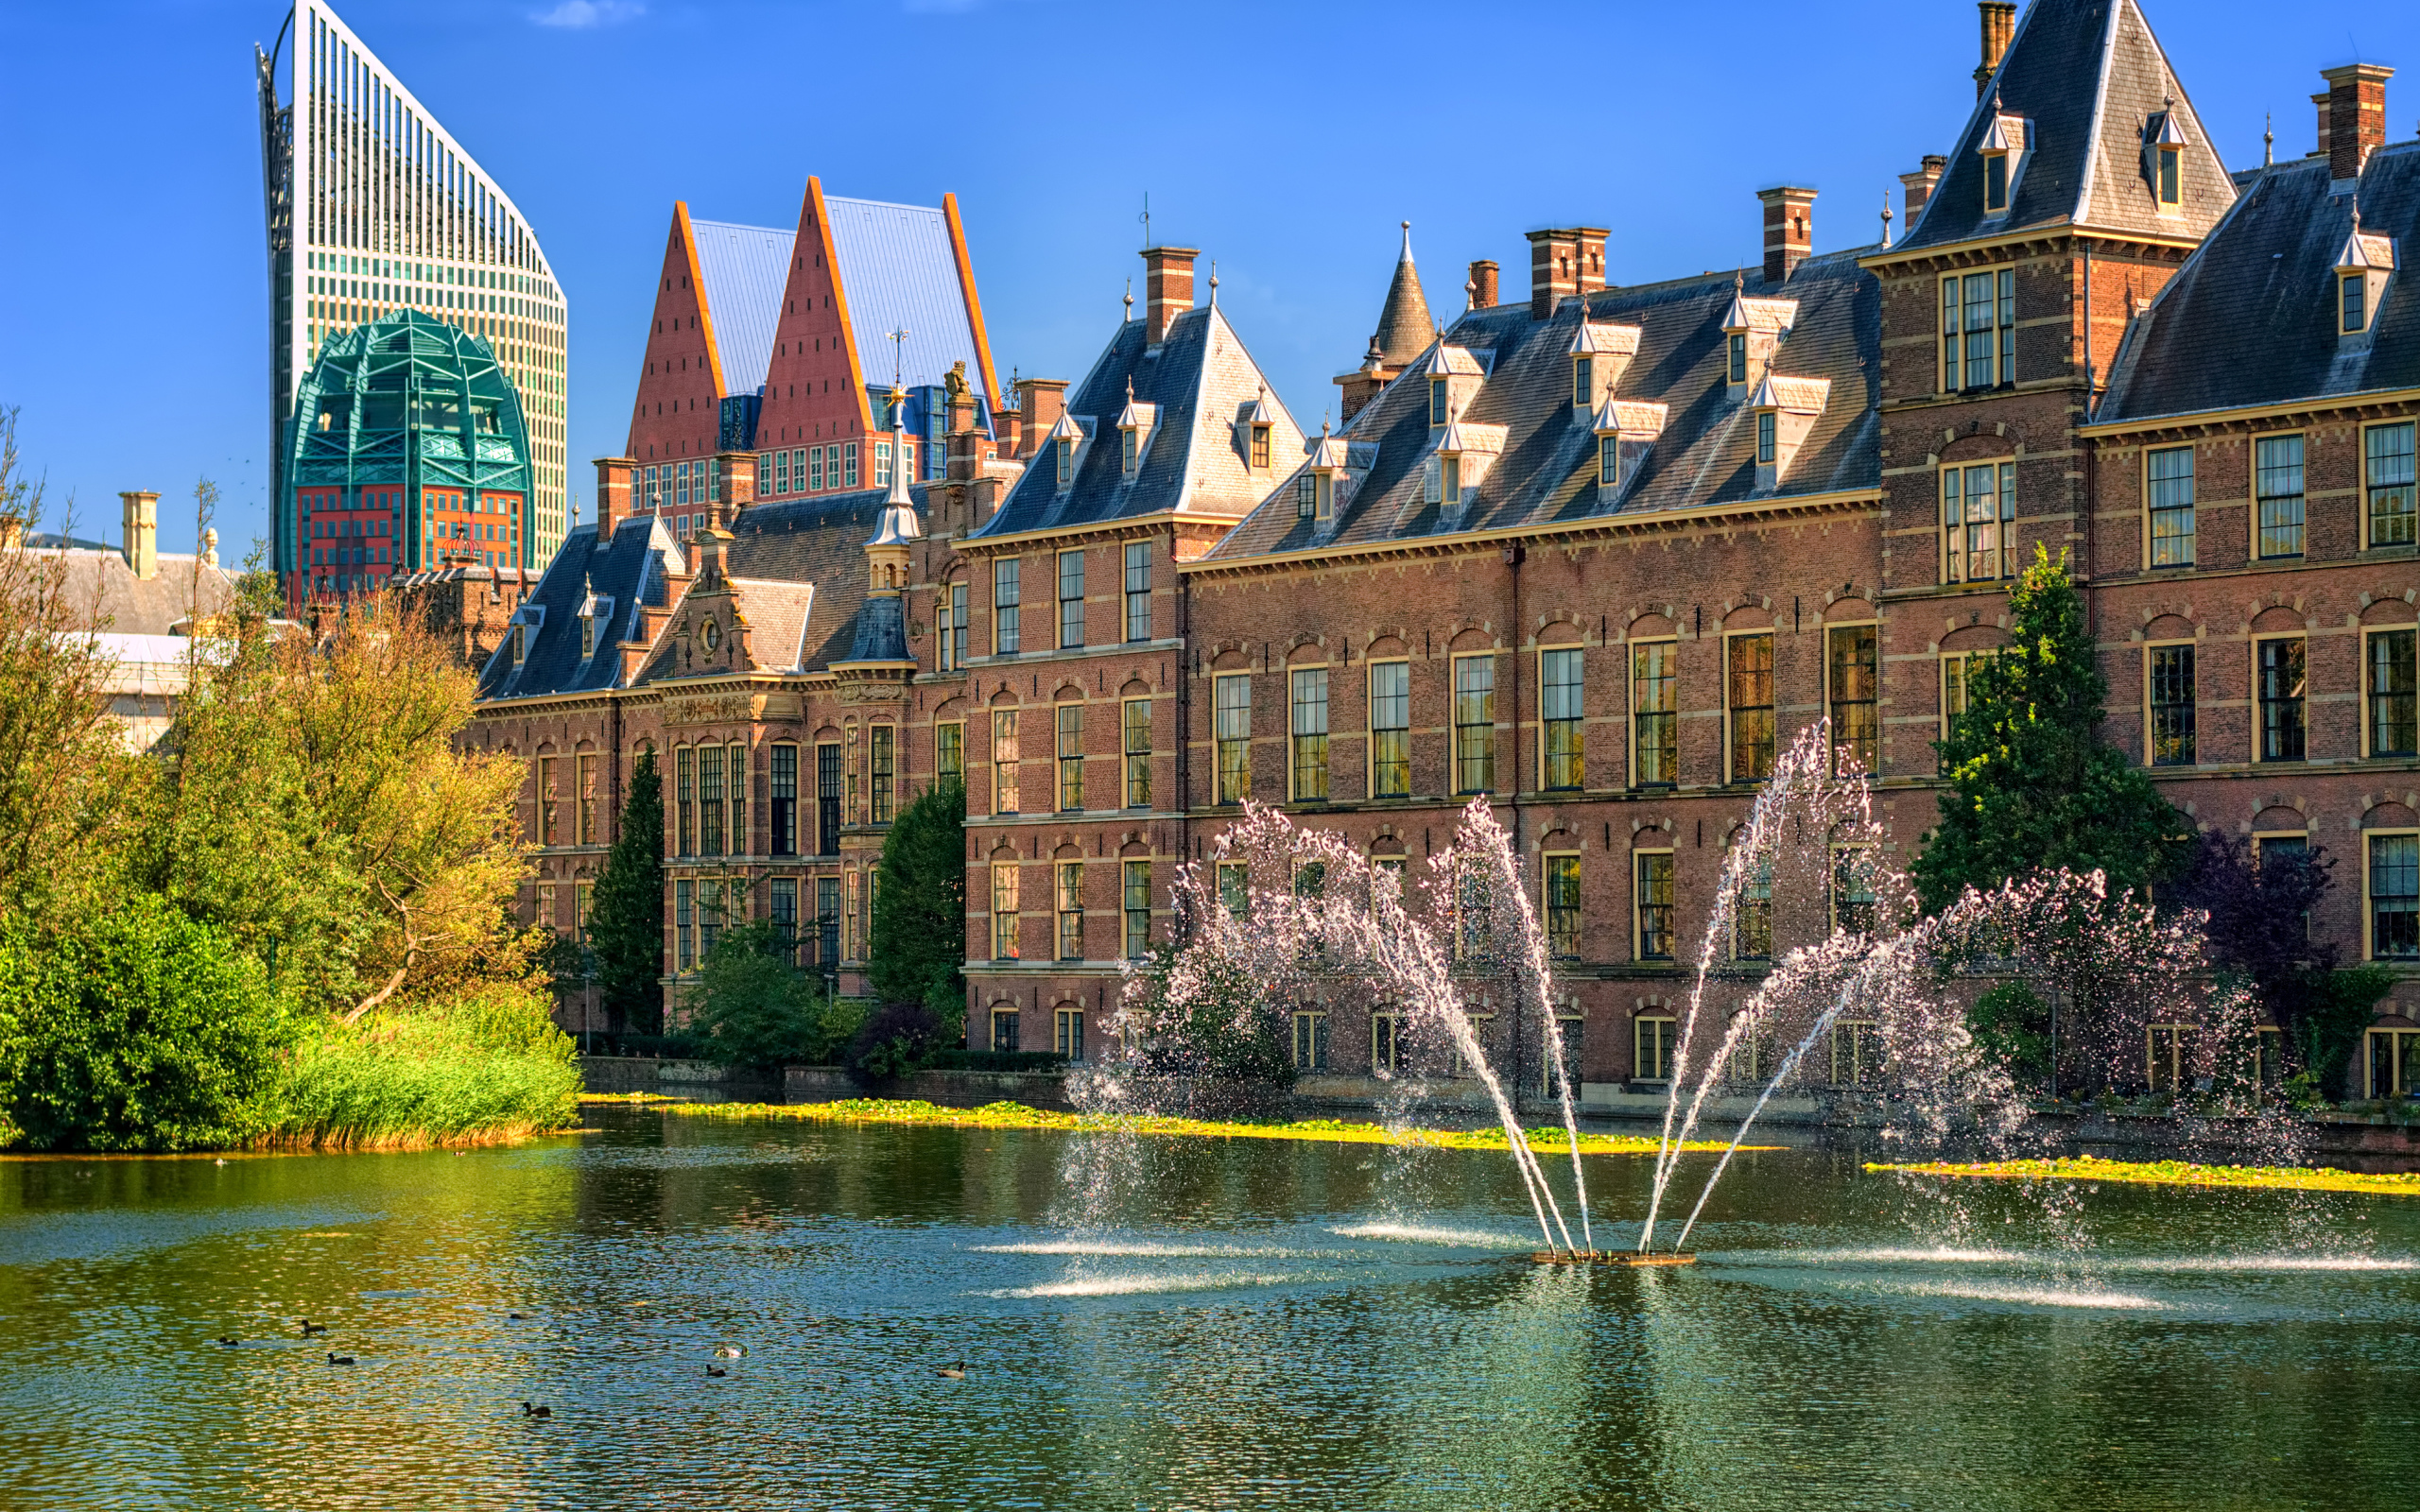 Фонтан на фоне архитектуры города Гаага, Нидерланды  